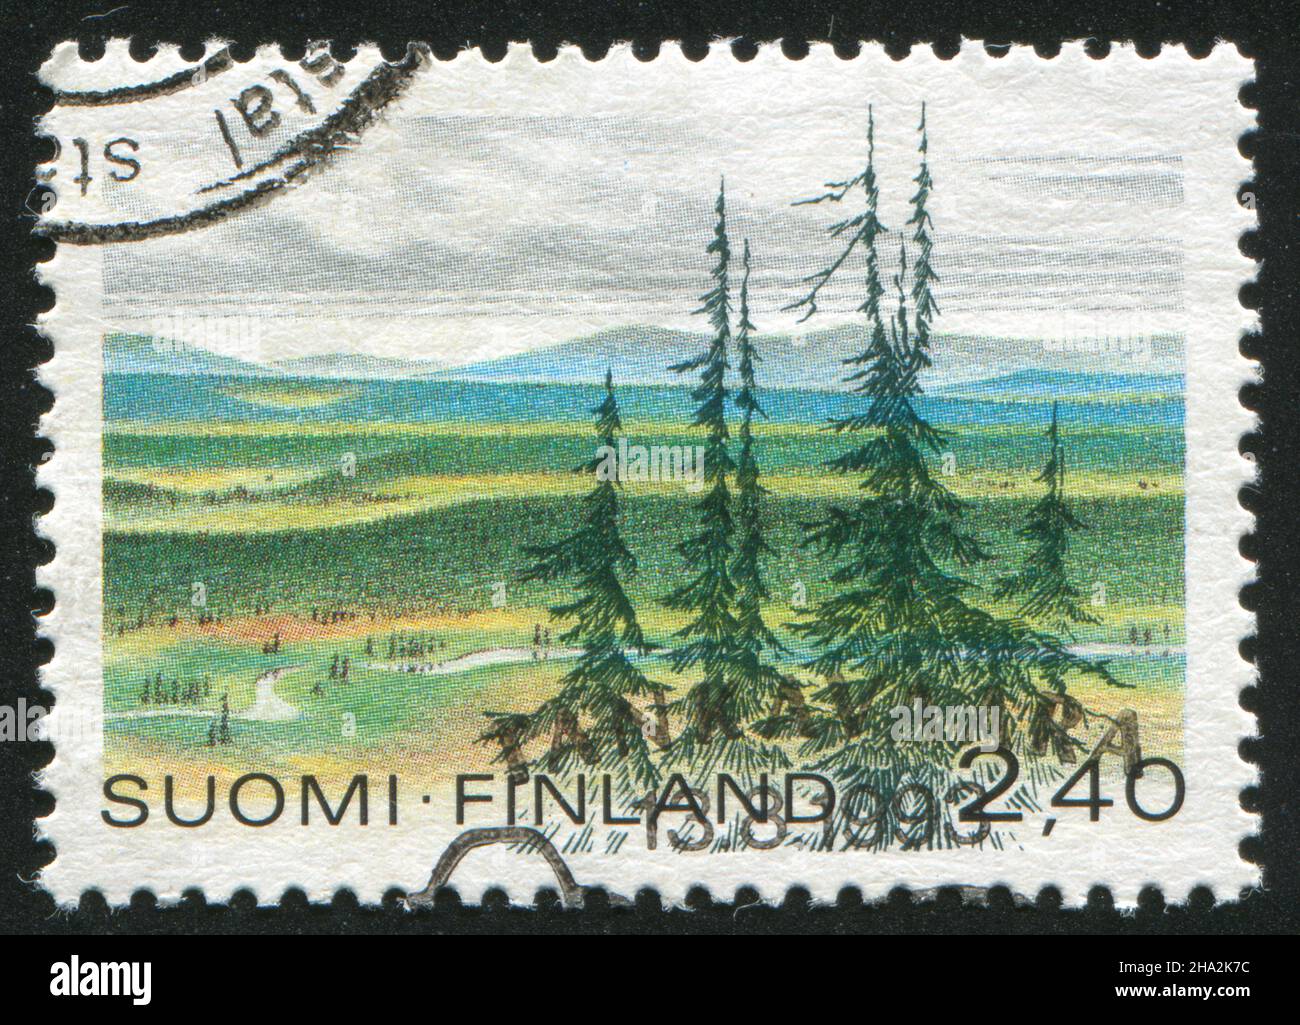 FINLANDE - VERS 1988: Timbre imprimé par la Finlande, montre le parc national Urho-Kekkonen avec les montagnes Saariselka, vers 1988 Banque D'Images